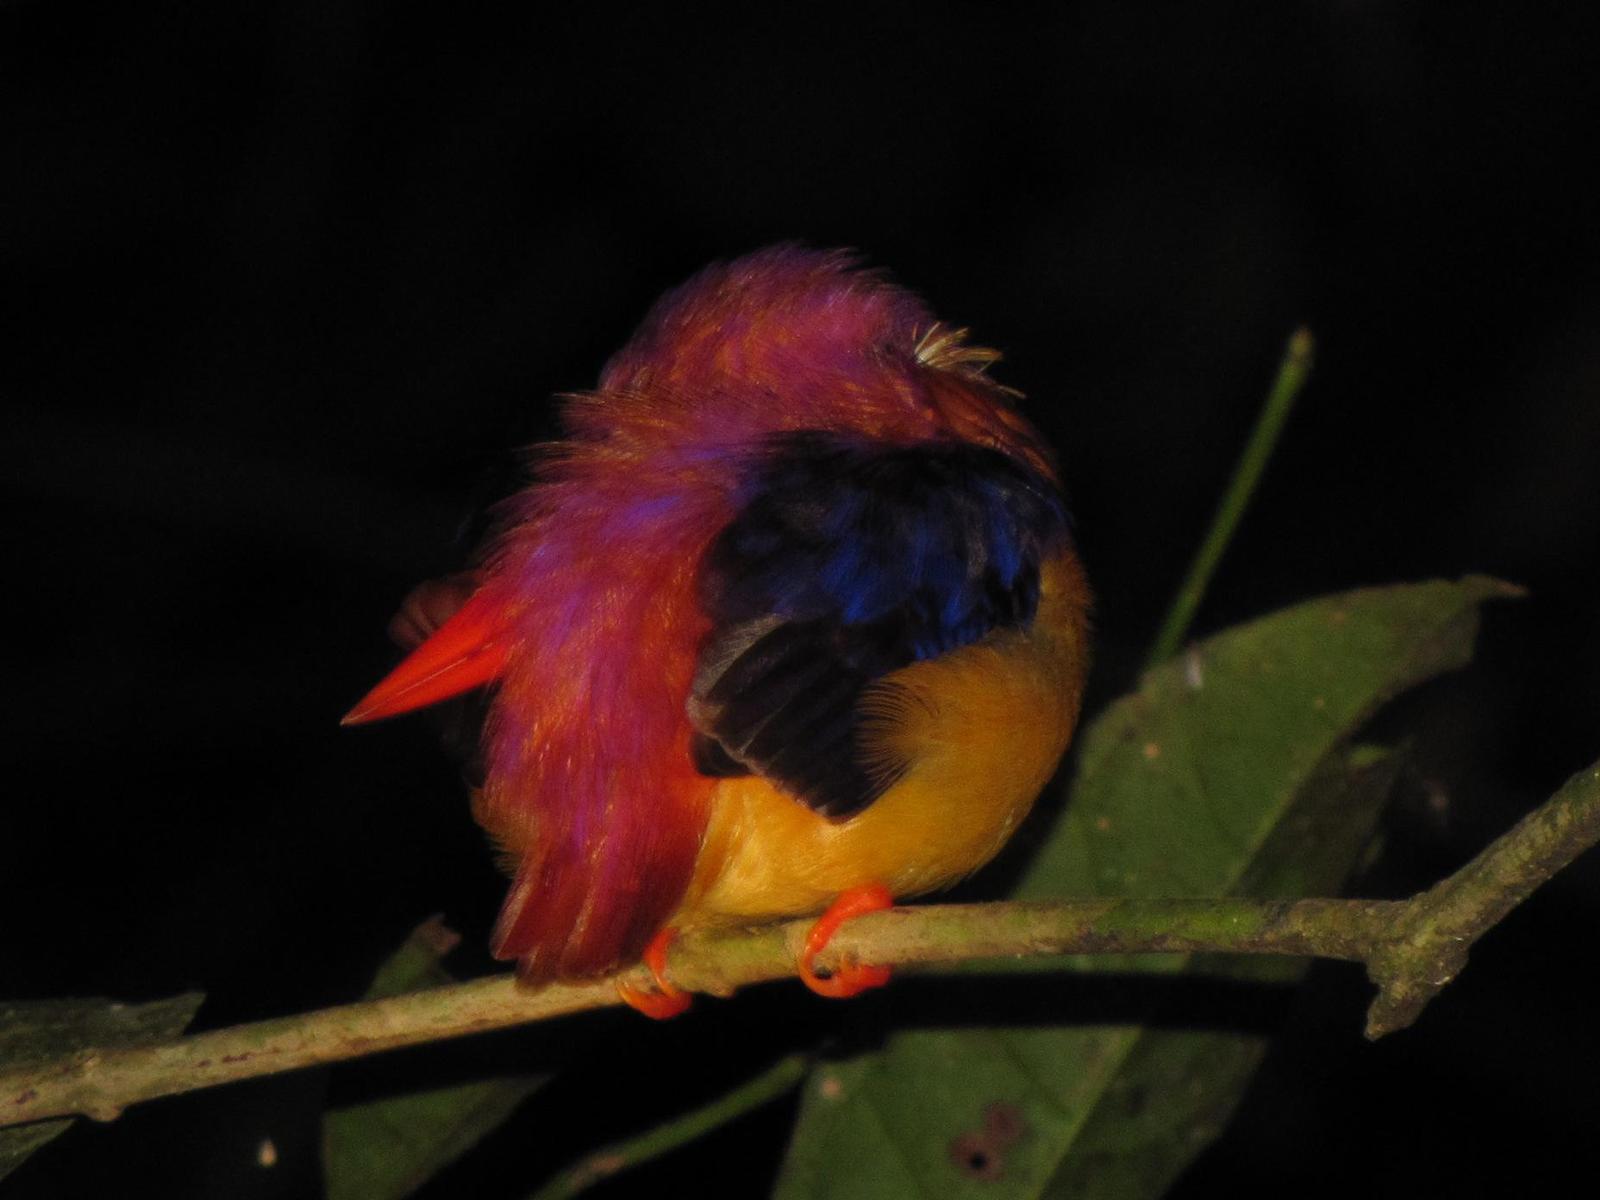 Black-backed Dwarf-Kingfisher Photo by Jeff Harding